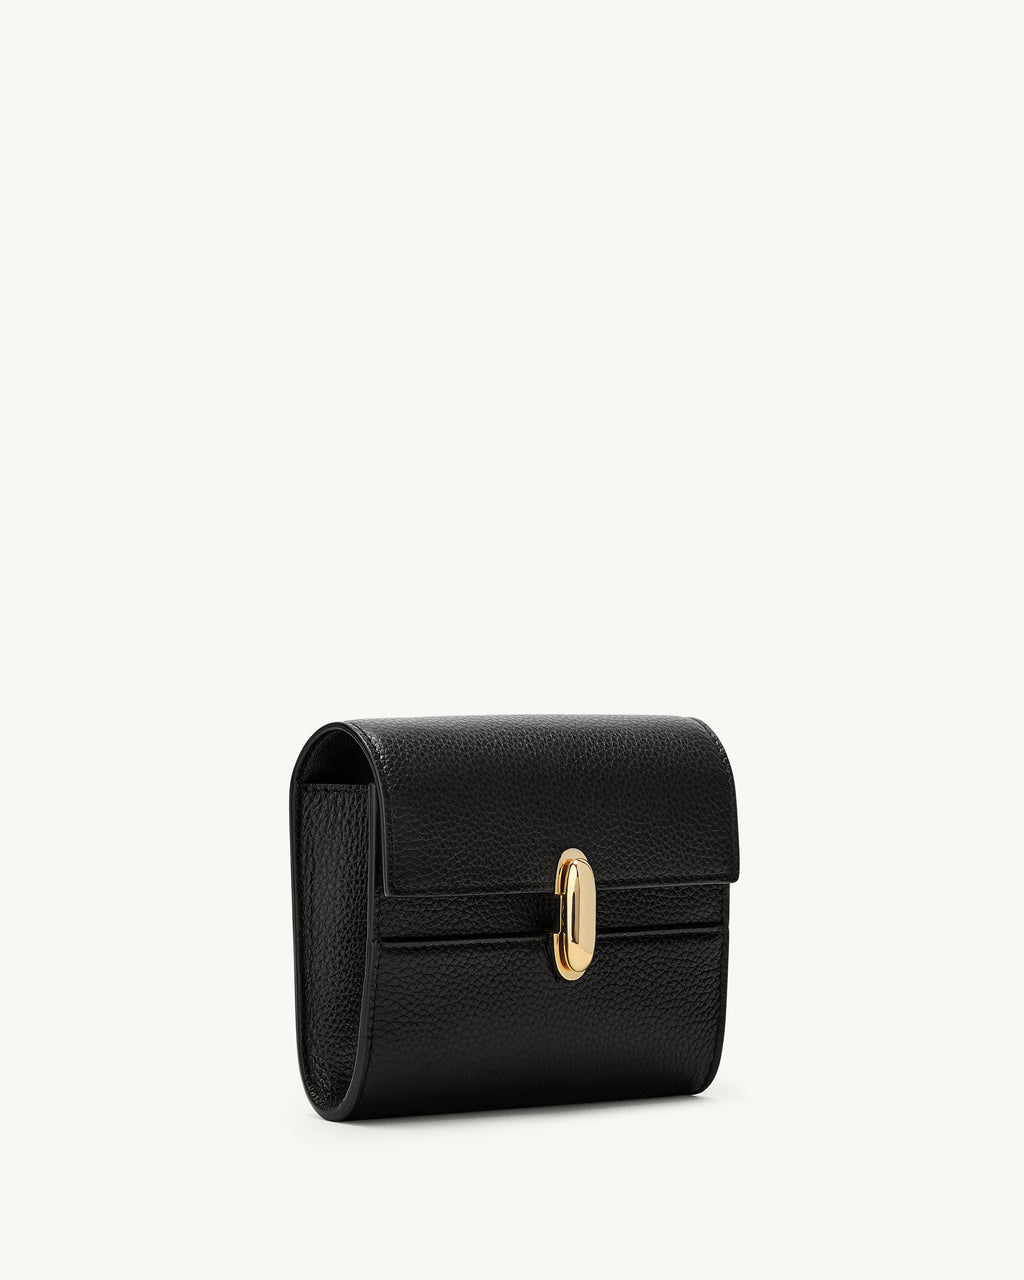 Symmetry Wallet in Black Grained Leather